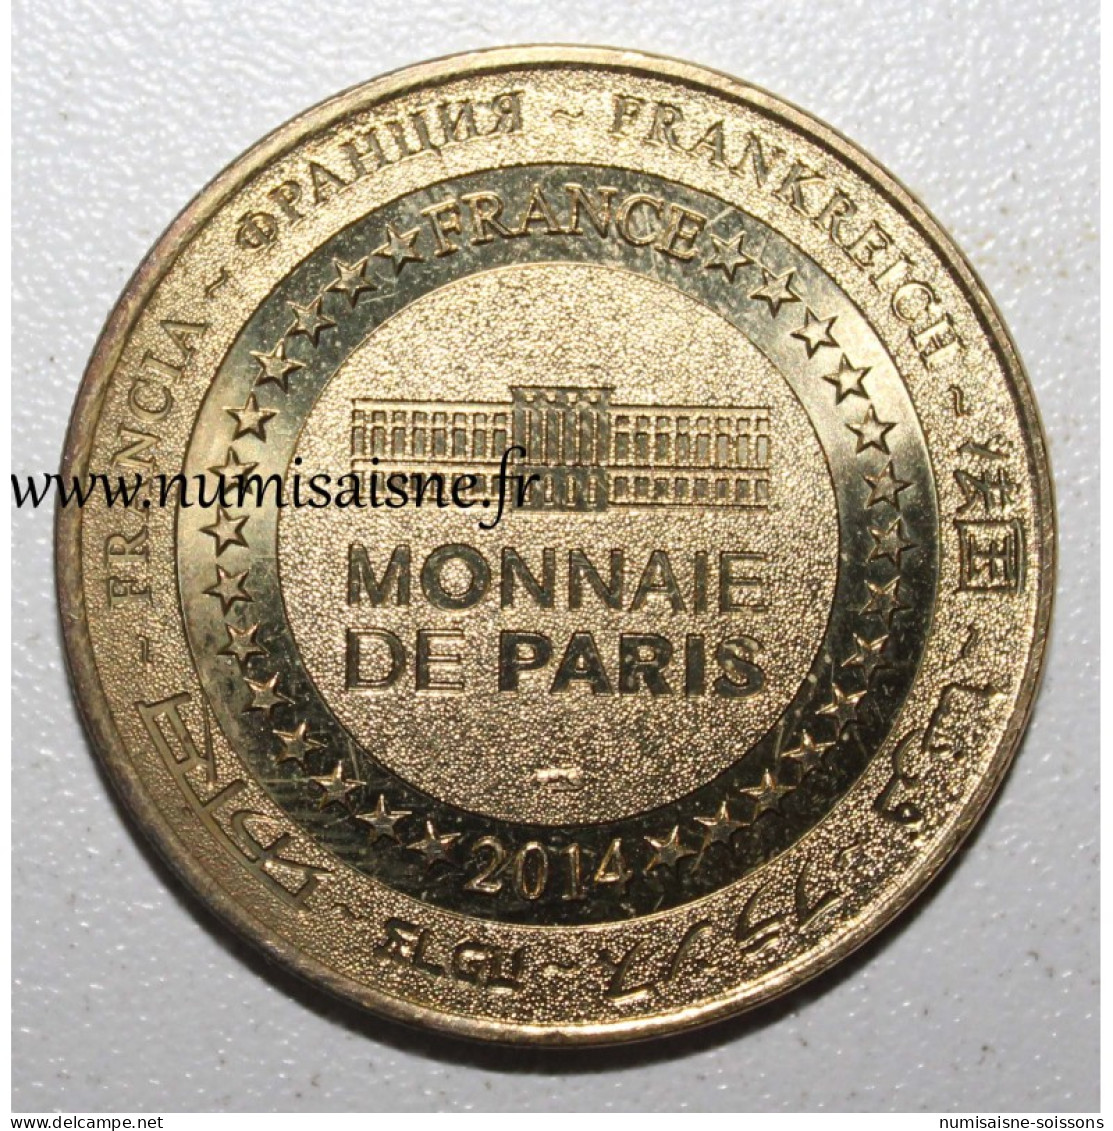 18 - BOURGES - ROUTE JACQUES COEUR EN BERRY - Monnaie De Paris - 2014 - TTB - 2014